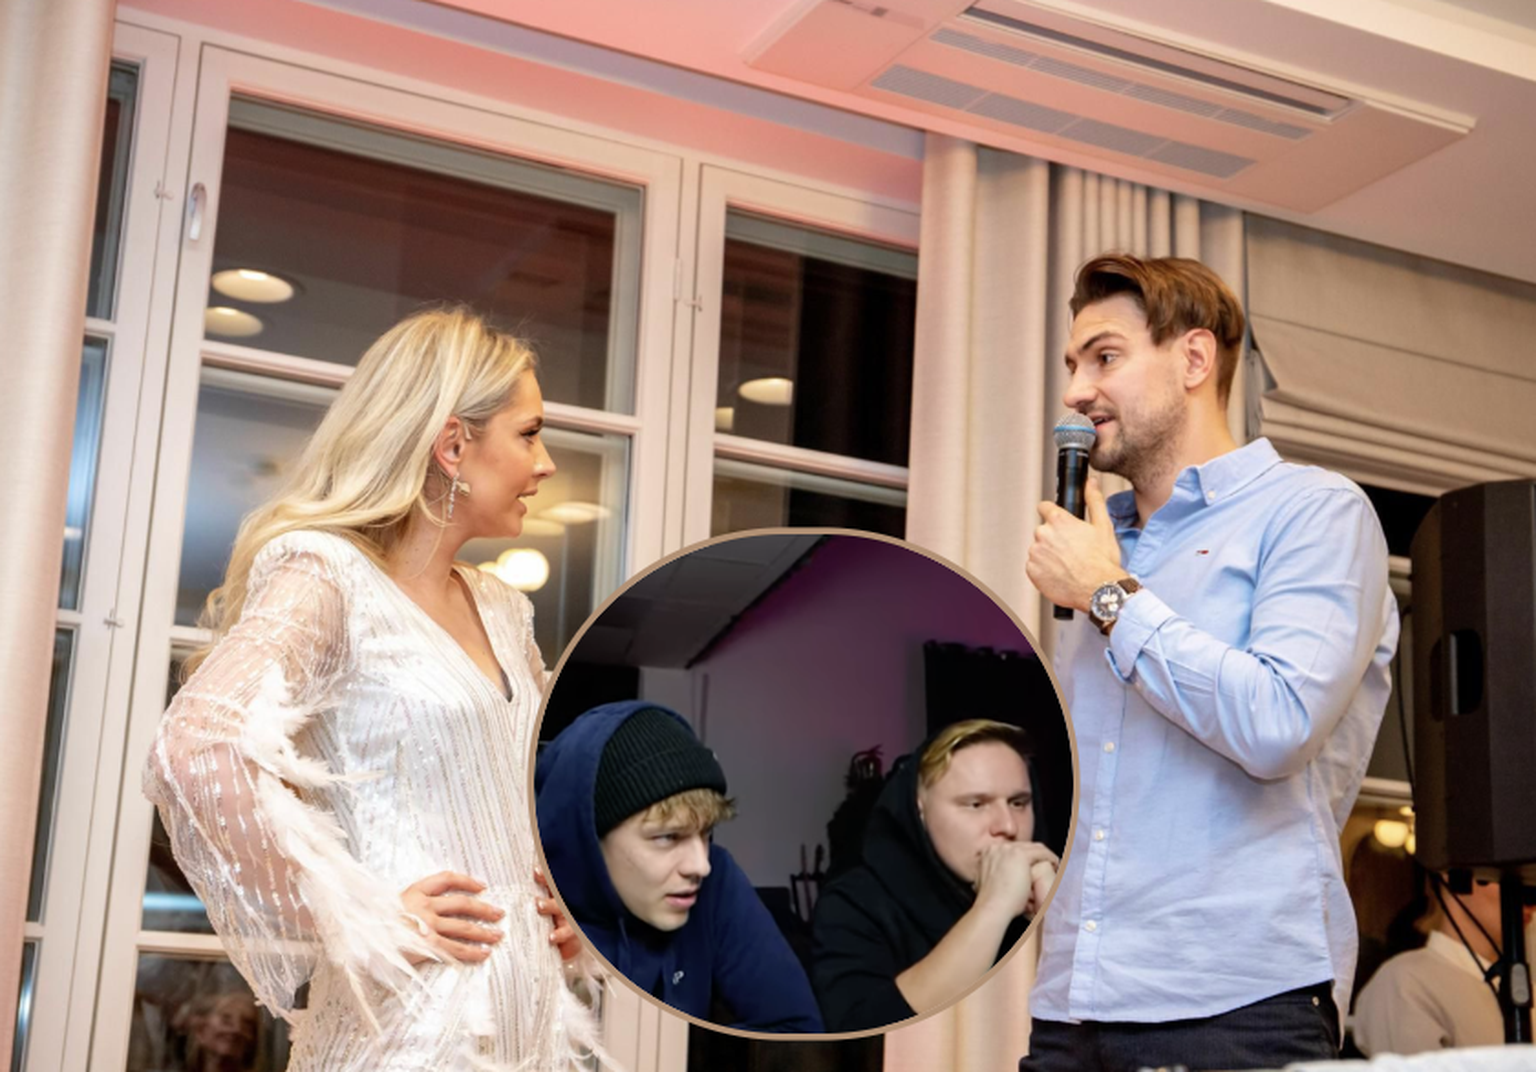 Eesti reaktsioonivideote kroonimata kuningas Andrei Zevakin võttis koos sõbra Robin Valtinguga klipid tulisest vestlusõhtust ette ja koos anti toimunule oma hinnang.